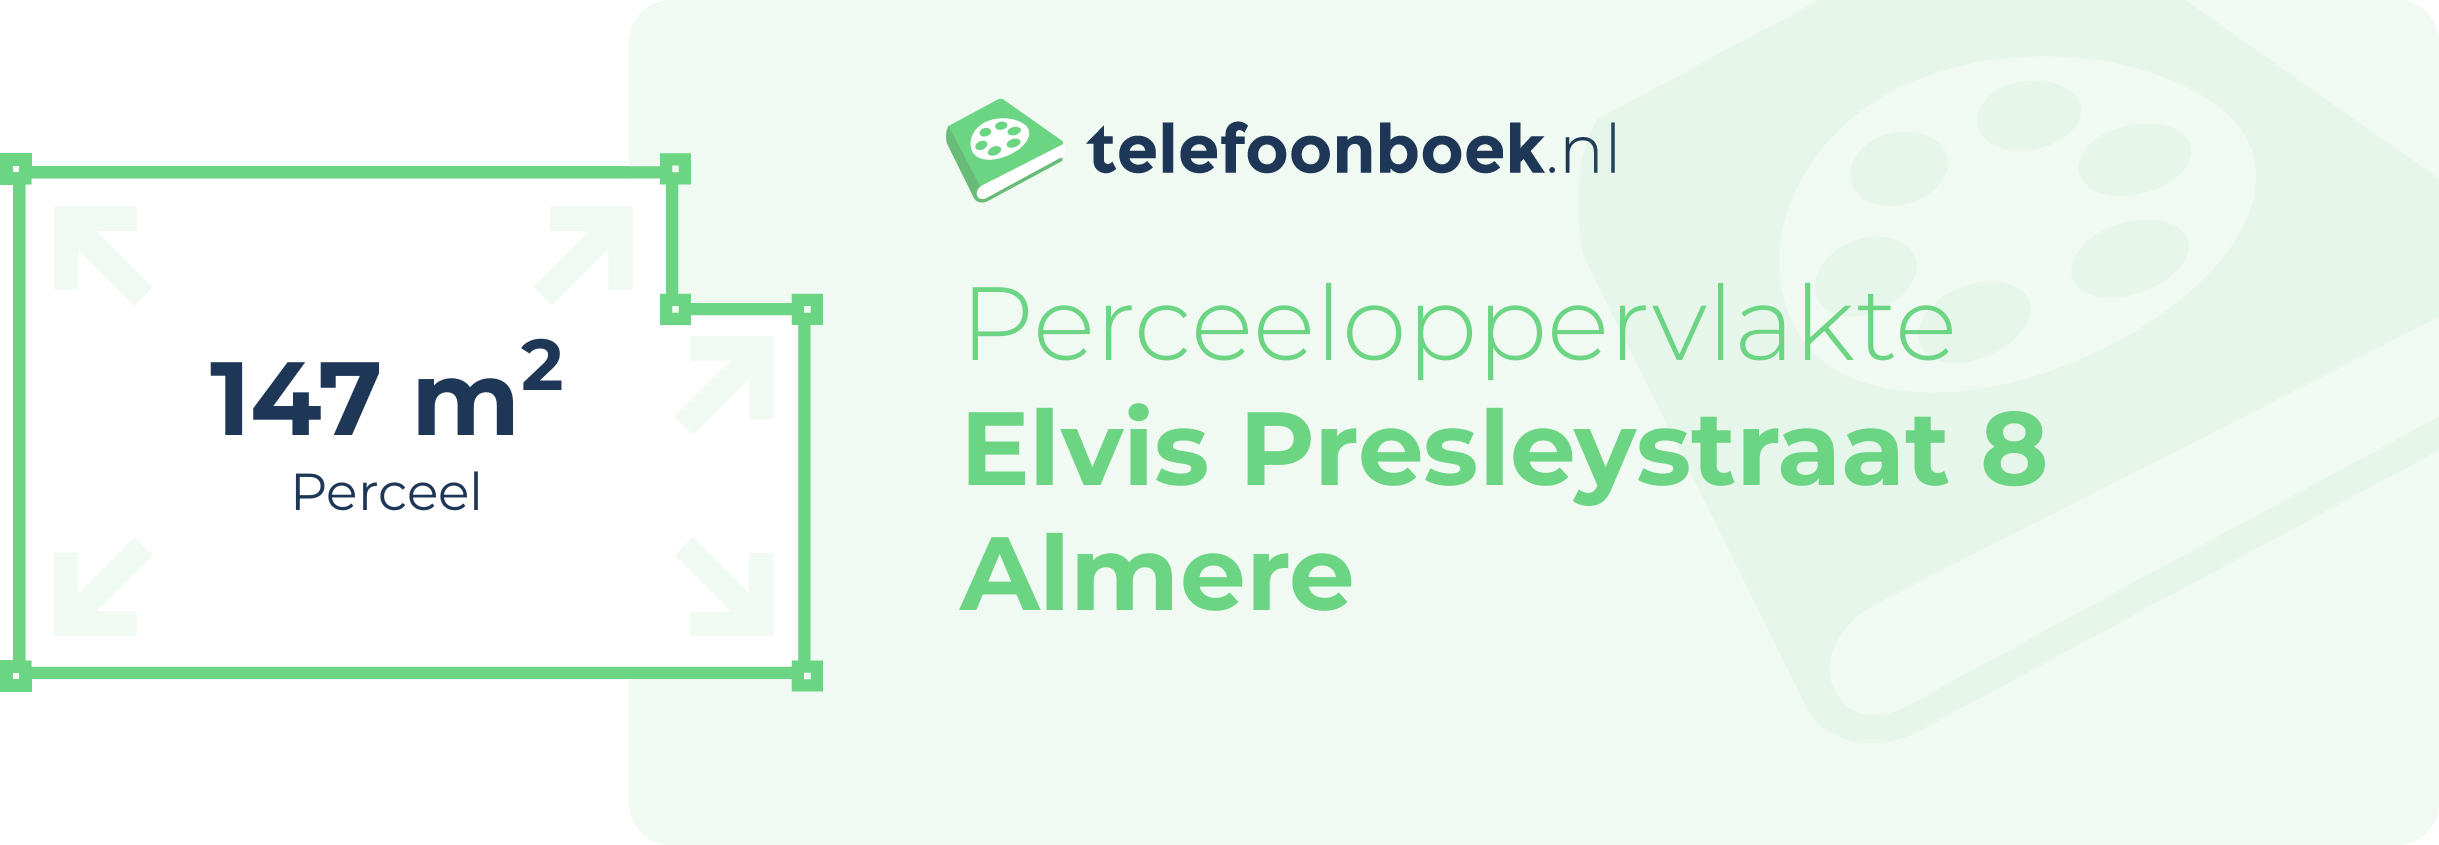 Perceeloppervlakte Elvis Presleystraat 8 Almere